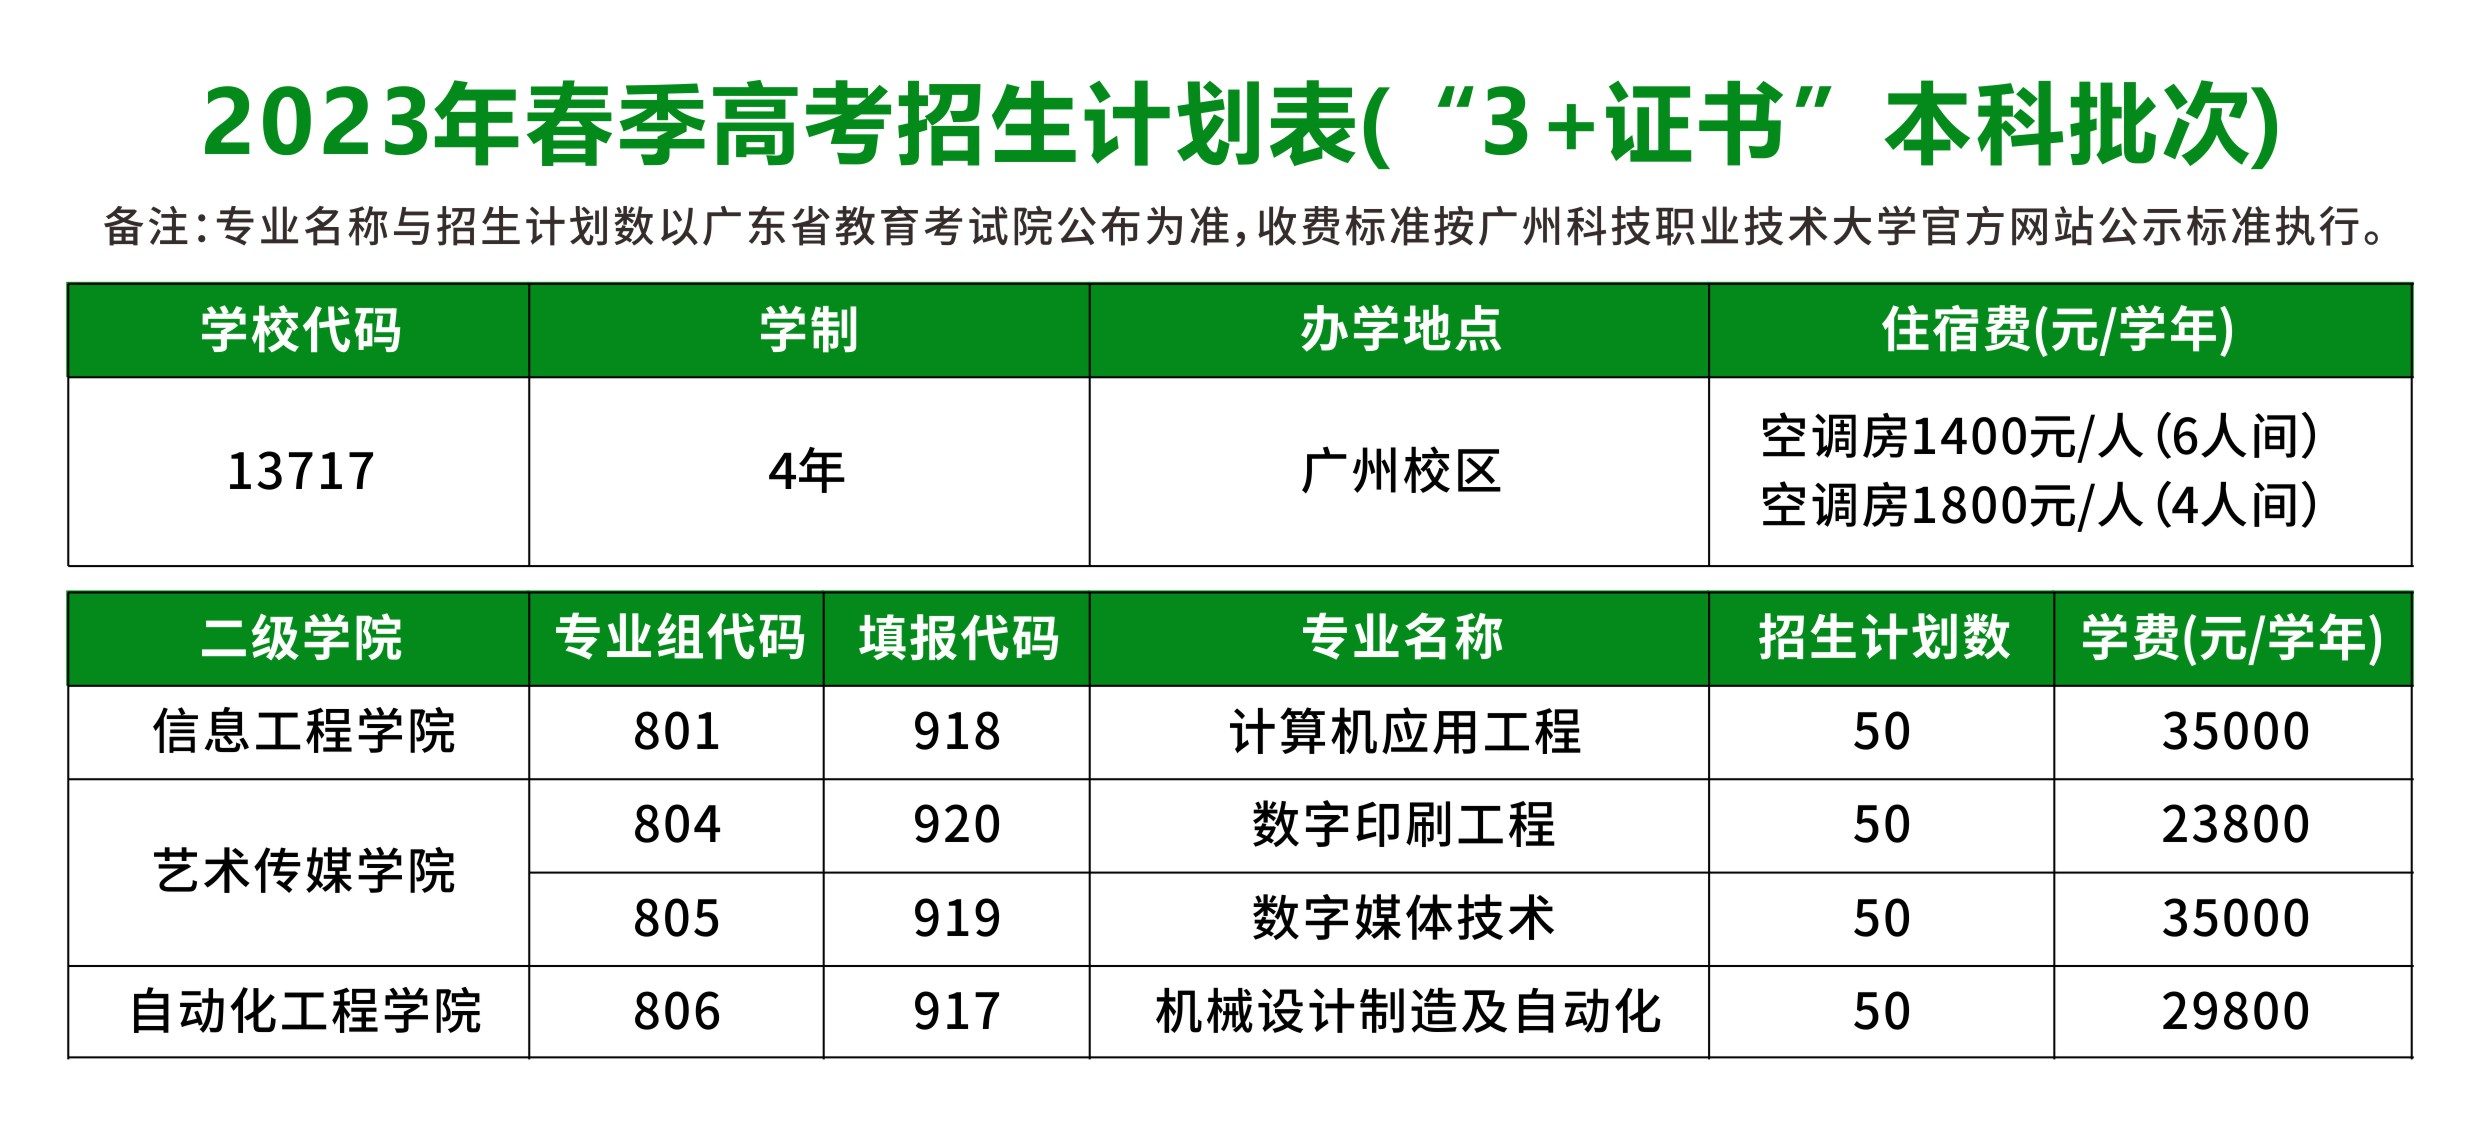 广州科技职业技术大学2023年中职3+证书本科招生计划